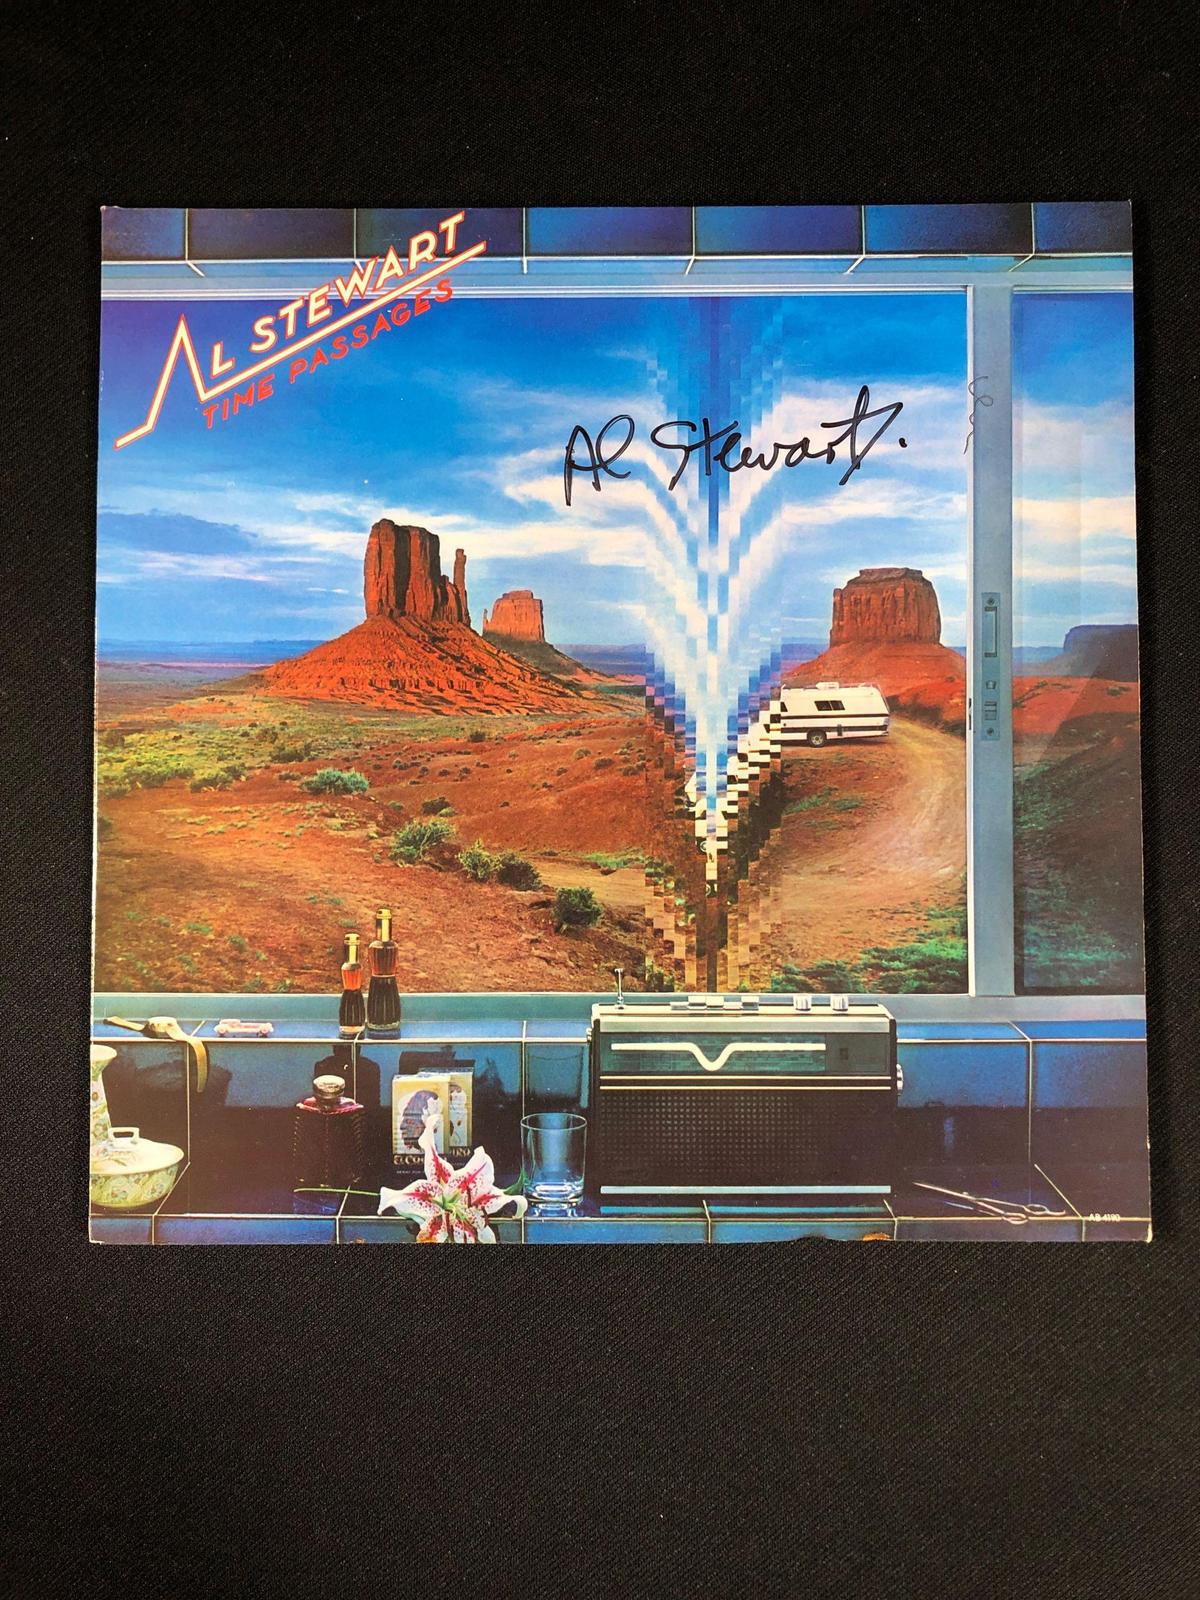 Al Stewart "Time Passages" Autographed Album